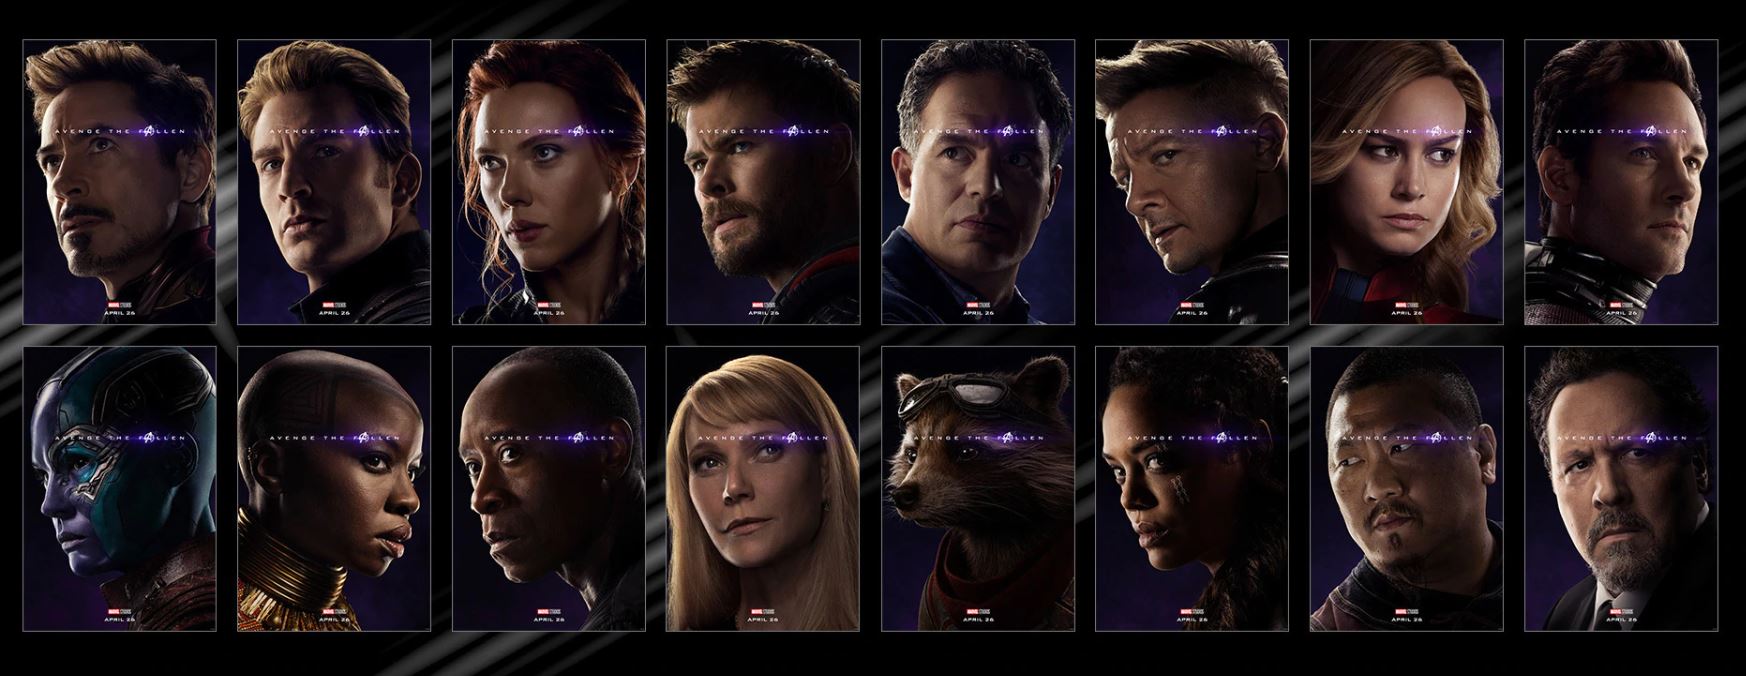 Avengers Endgame, Marvel, thor, iron man, captain america, thanos